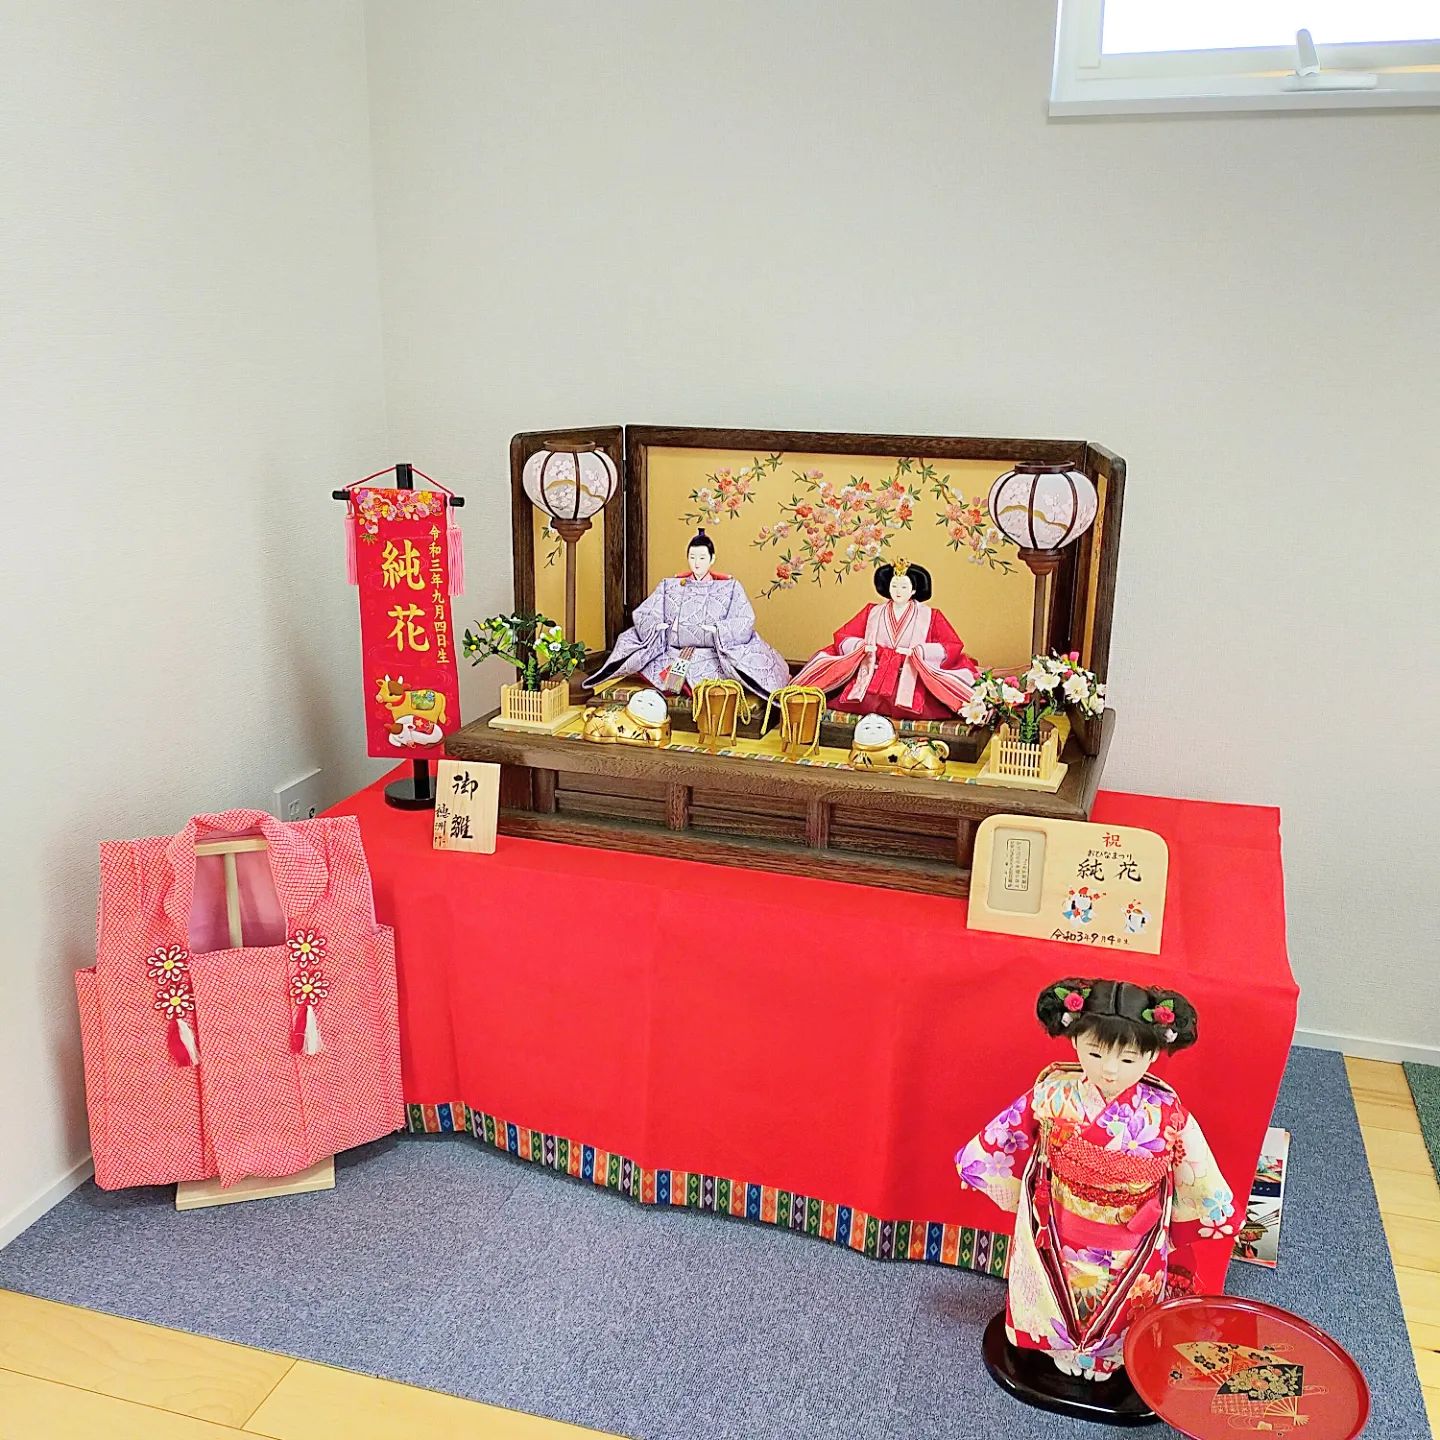 愛知県岡崎市のお客様へお雛さま配送、飾り付けいたしました。- from Instagram